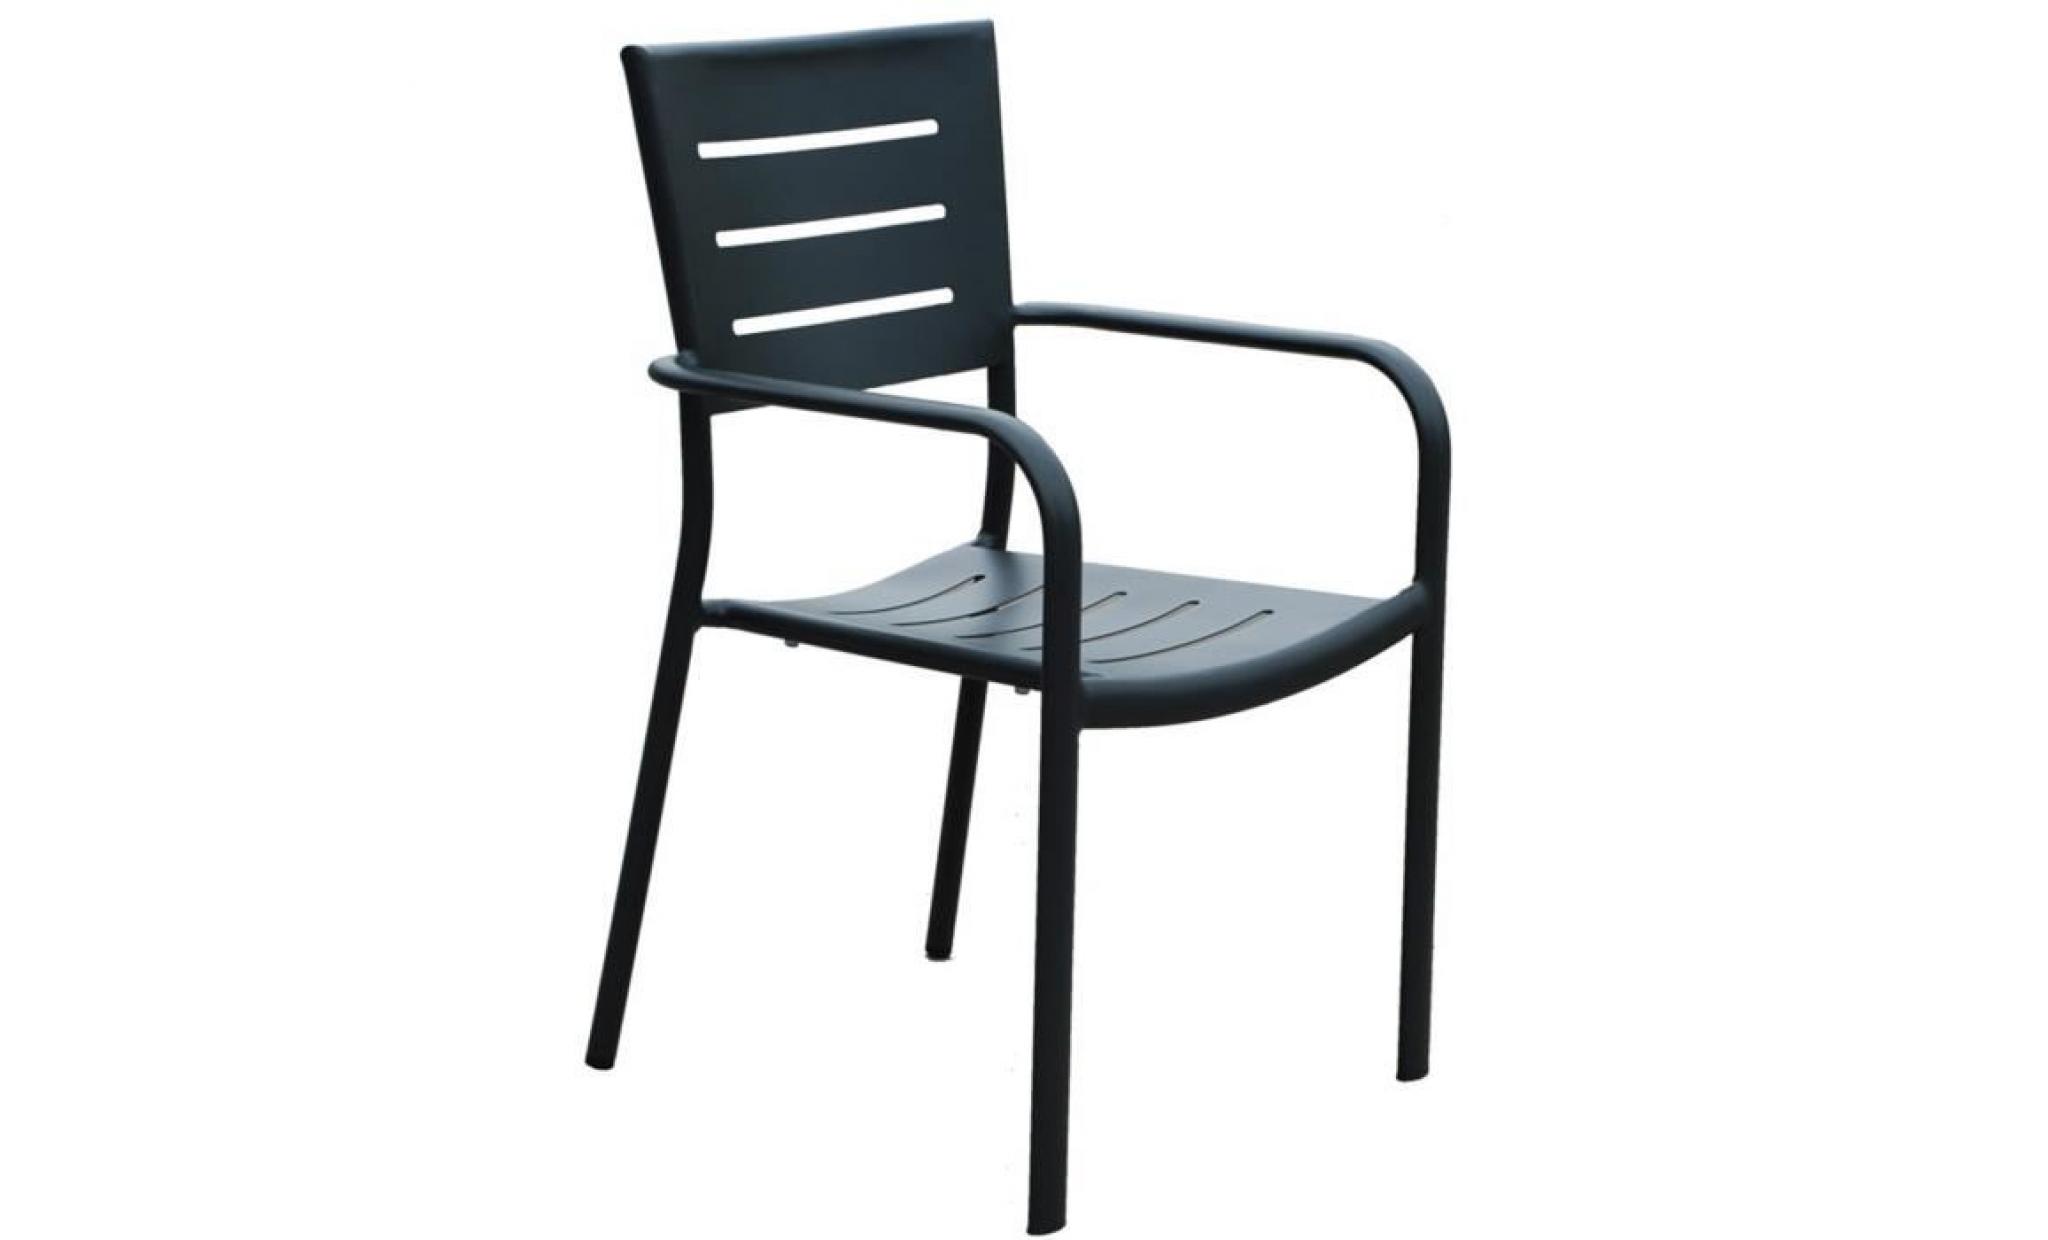 fauteuil de jardin empilable en aluminium coloris noir   dim : h83 x l55 x p64 cm